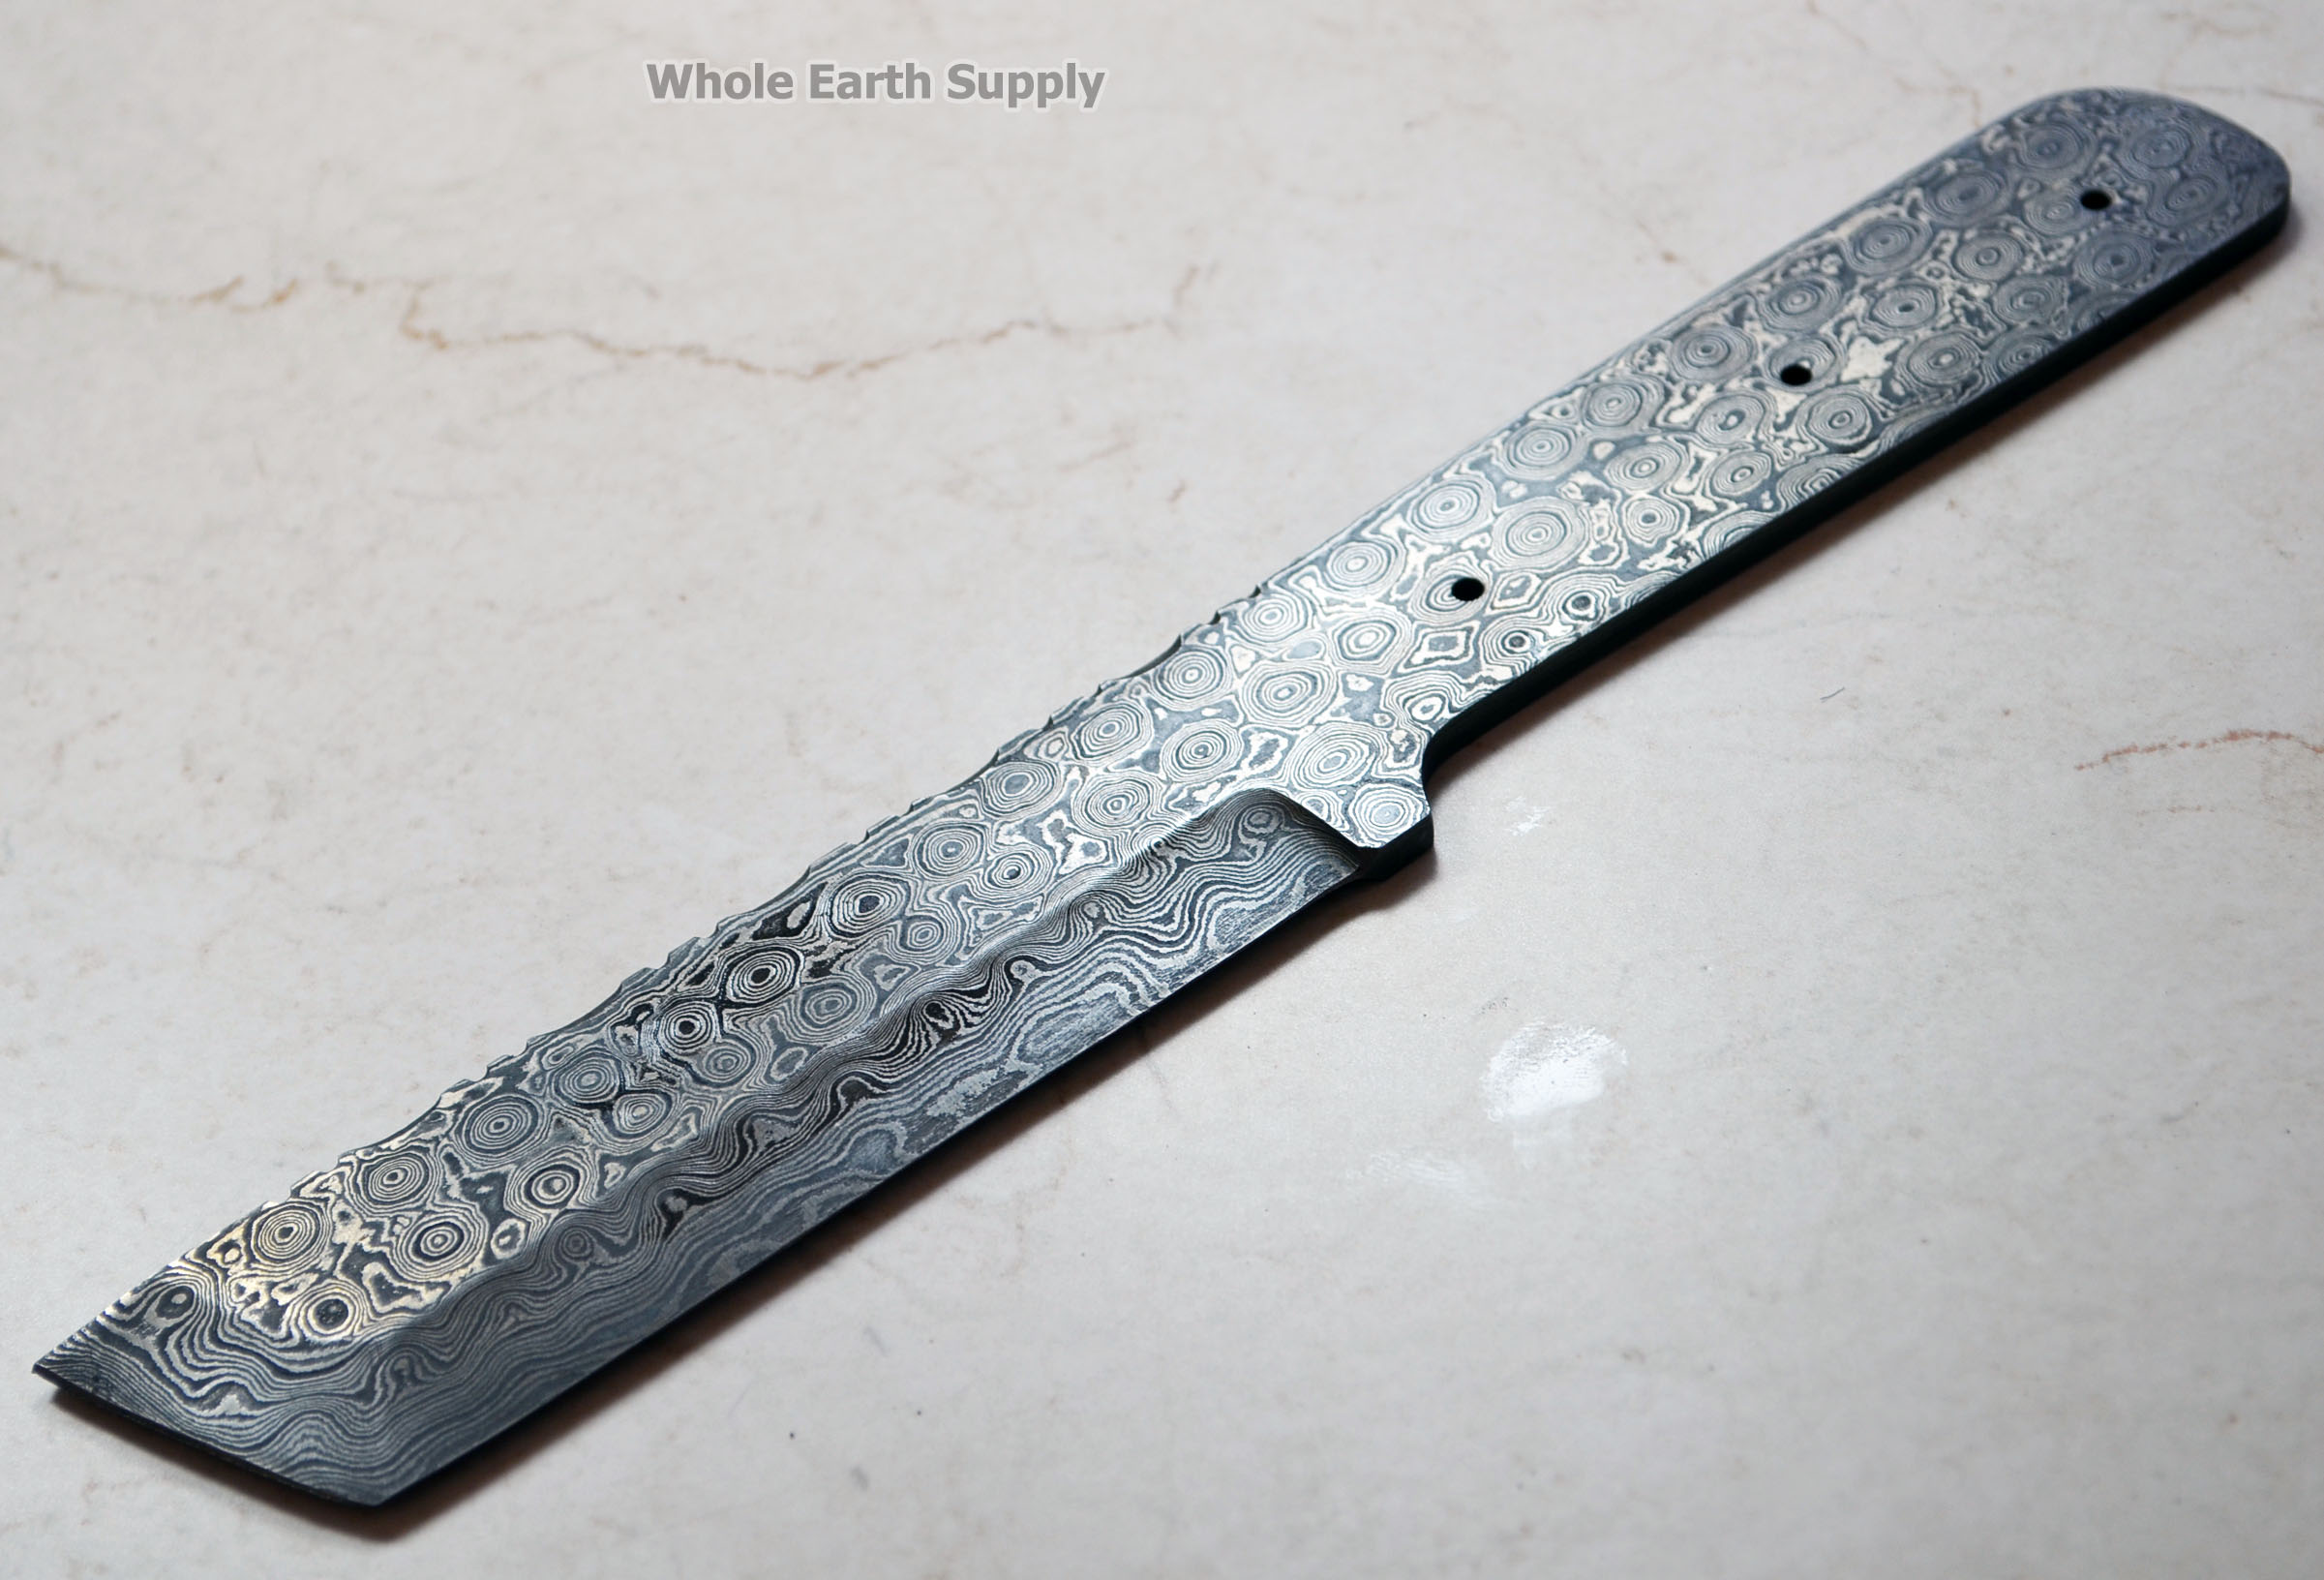 Damascus Knife Blank Blade Making Tanto Hunting Skinning Skinner Best Steel